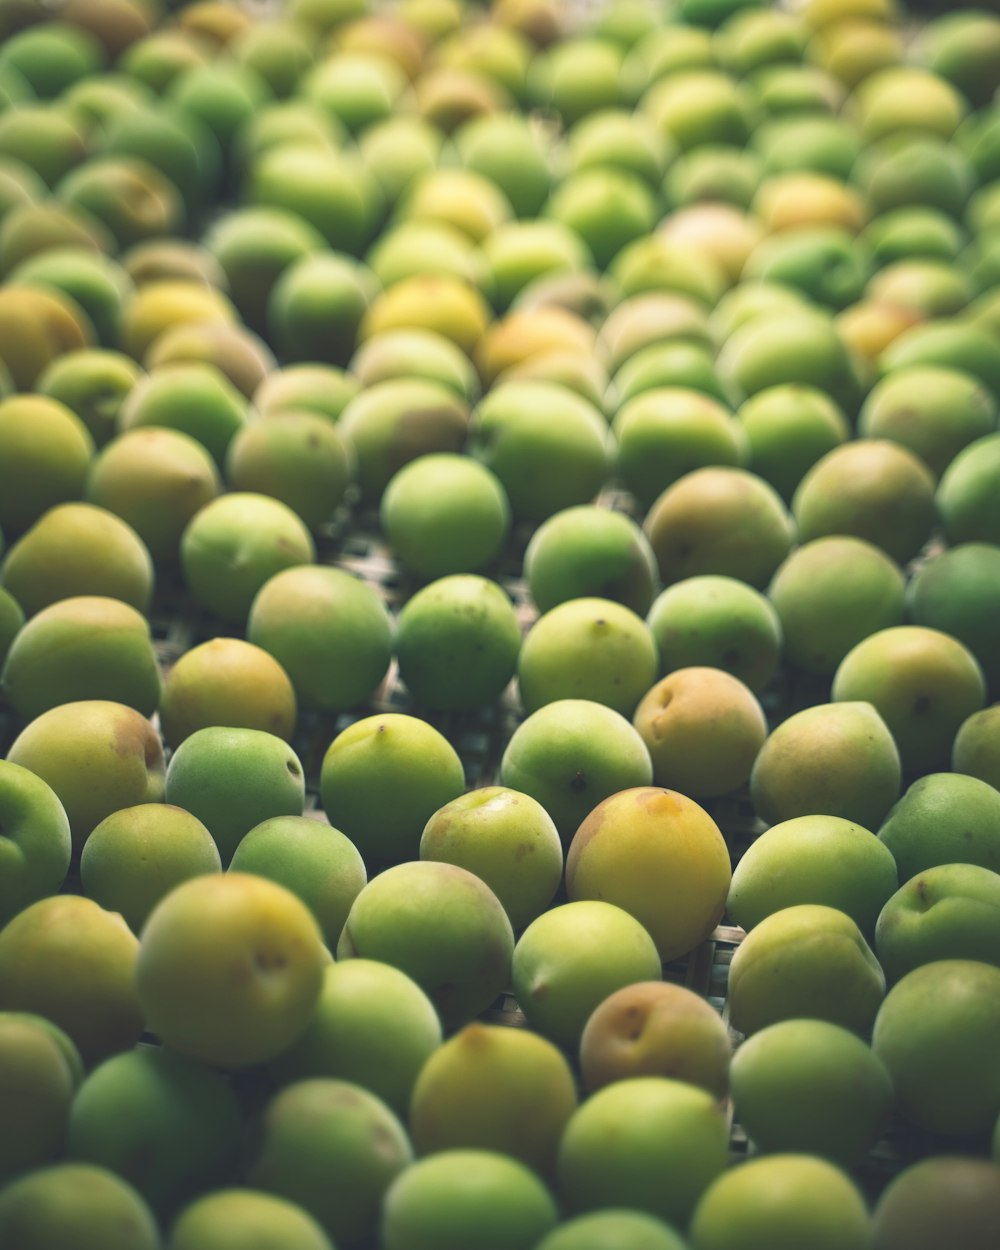 クローズアップ写真の緑の丸い果物